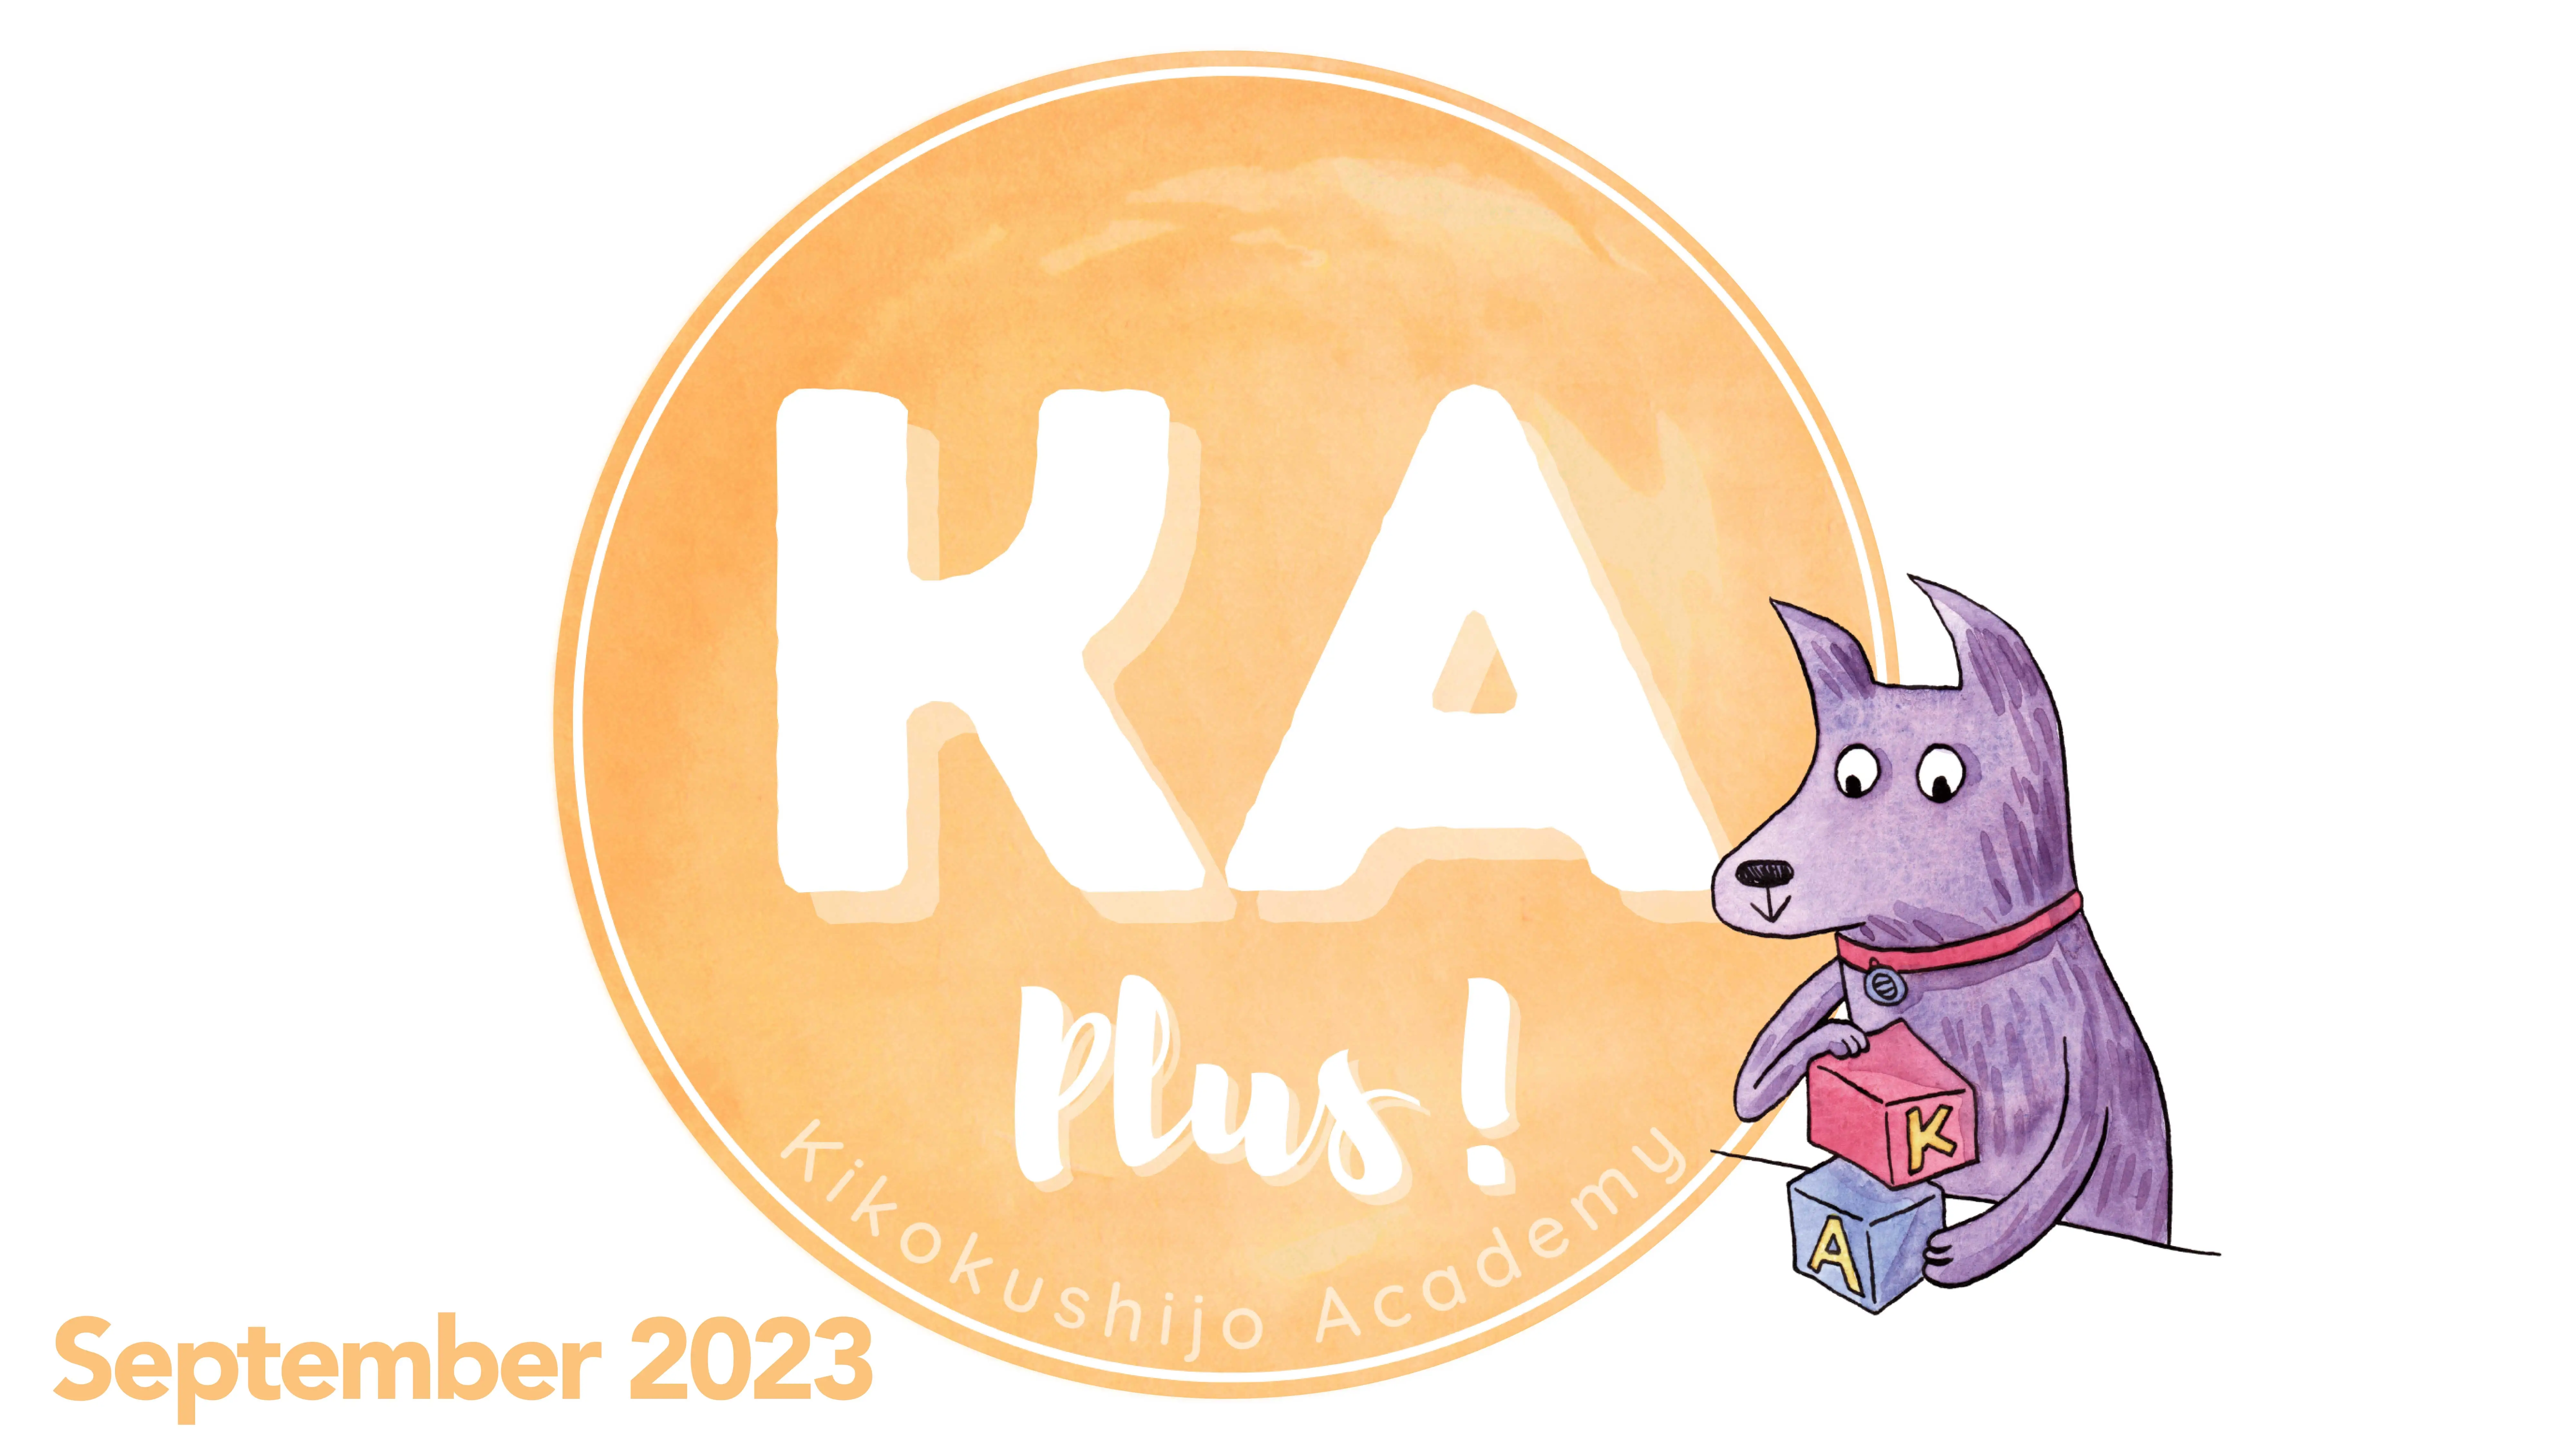 What's new on KA Plus! - September 2023